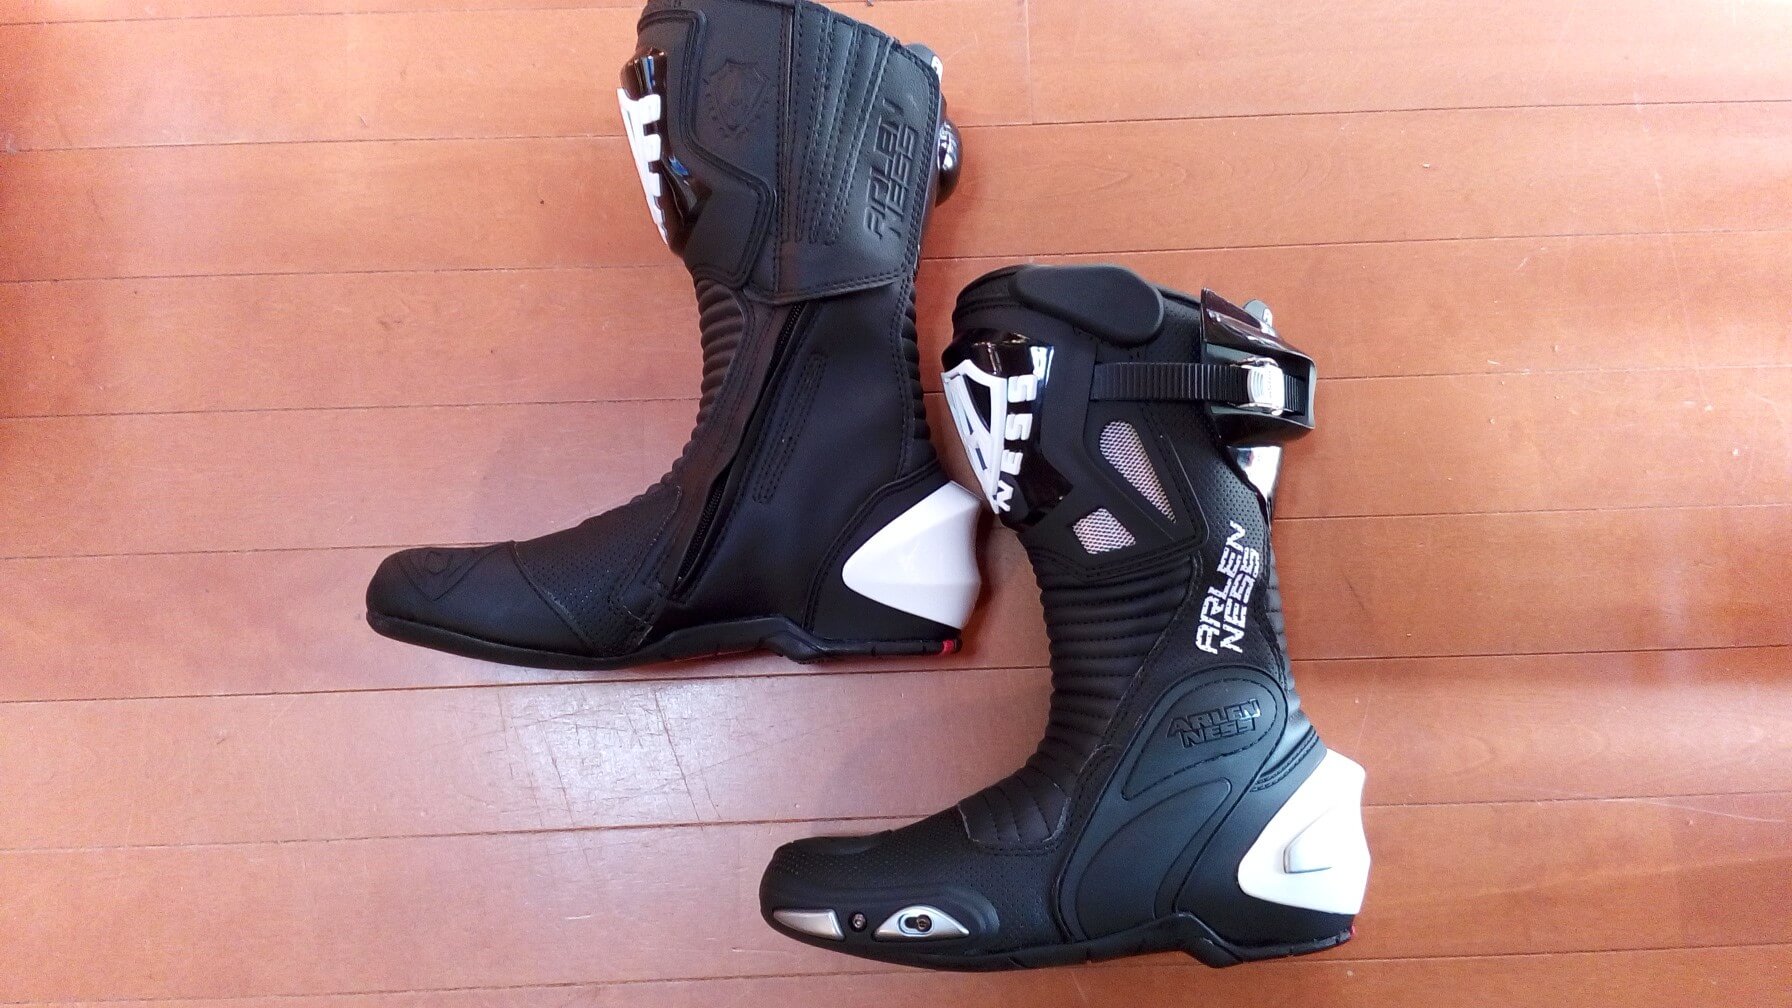 バイク・オートバイ用ブーツのストレッチの靴修理